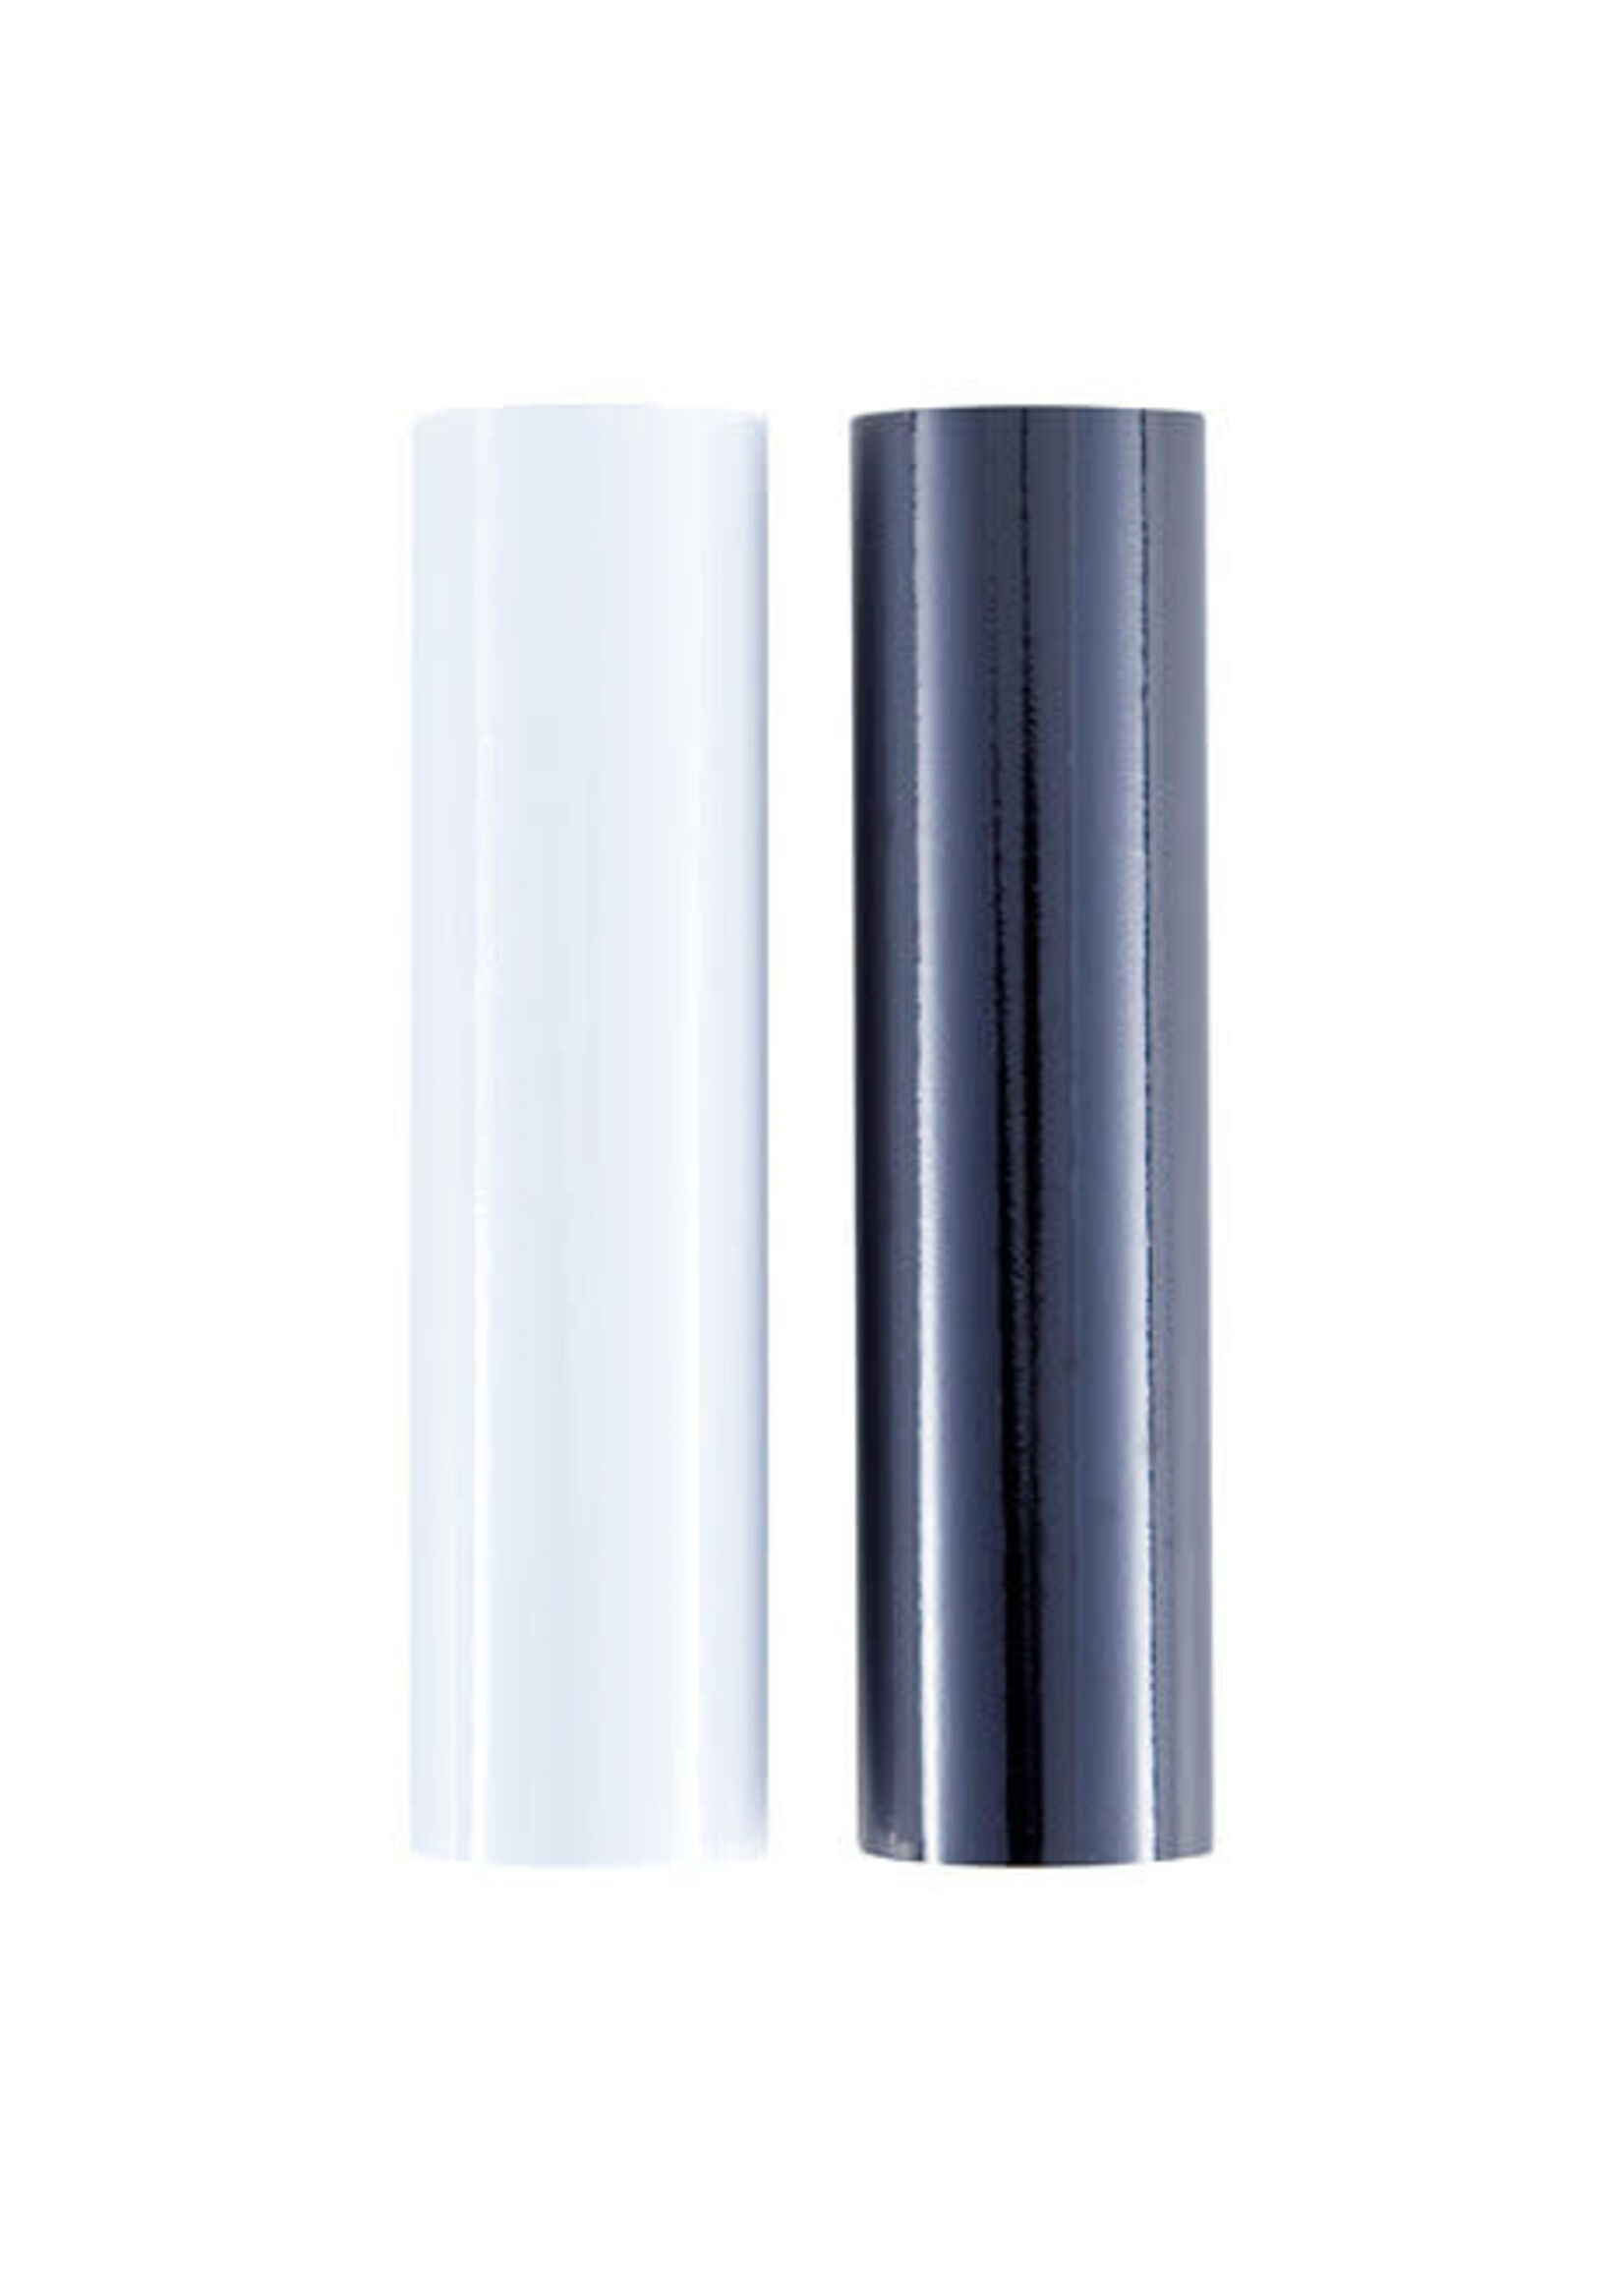 spellbinders Glimmer Hot Foil Opaque Black & White Pack (2 rolls) (GLF-049)